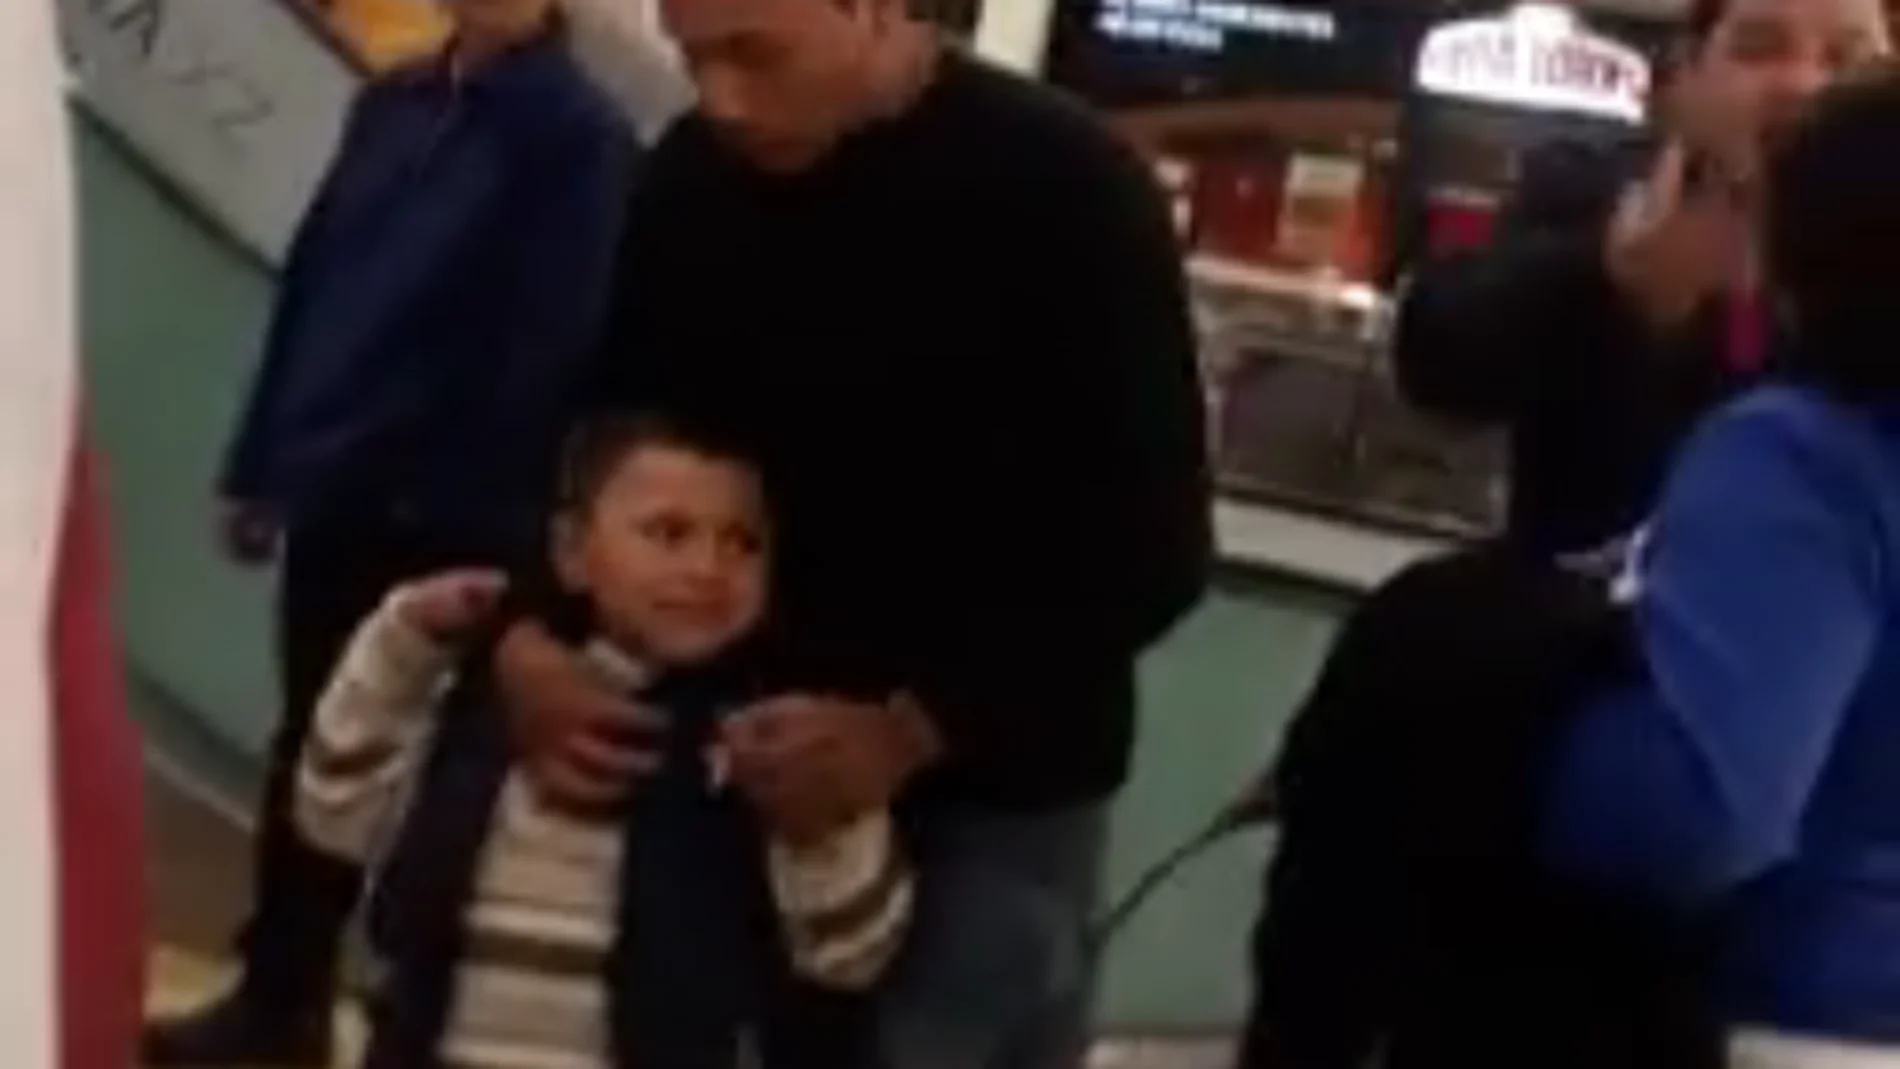 Una mujer agrede a su hijo de cuatro años con un cinturón en la cara en un centro comercial 